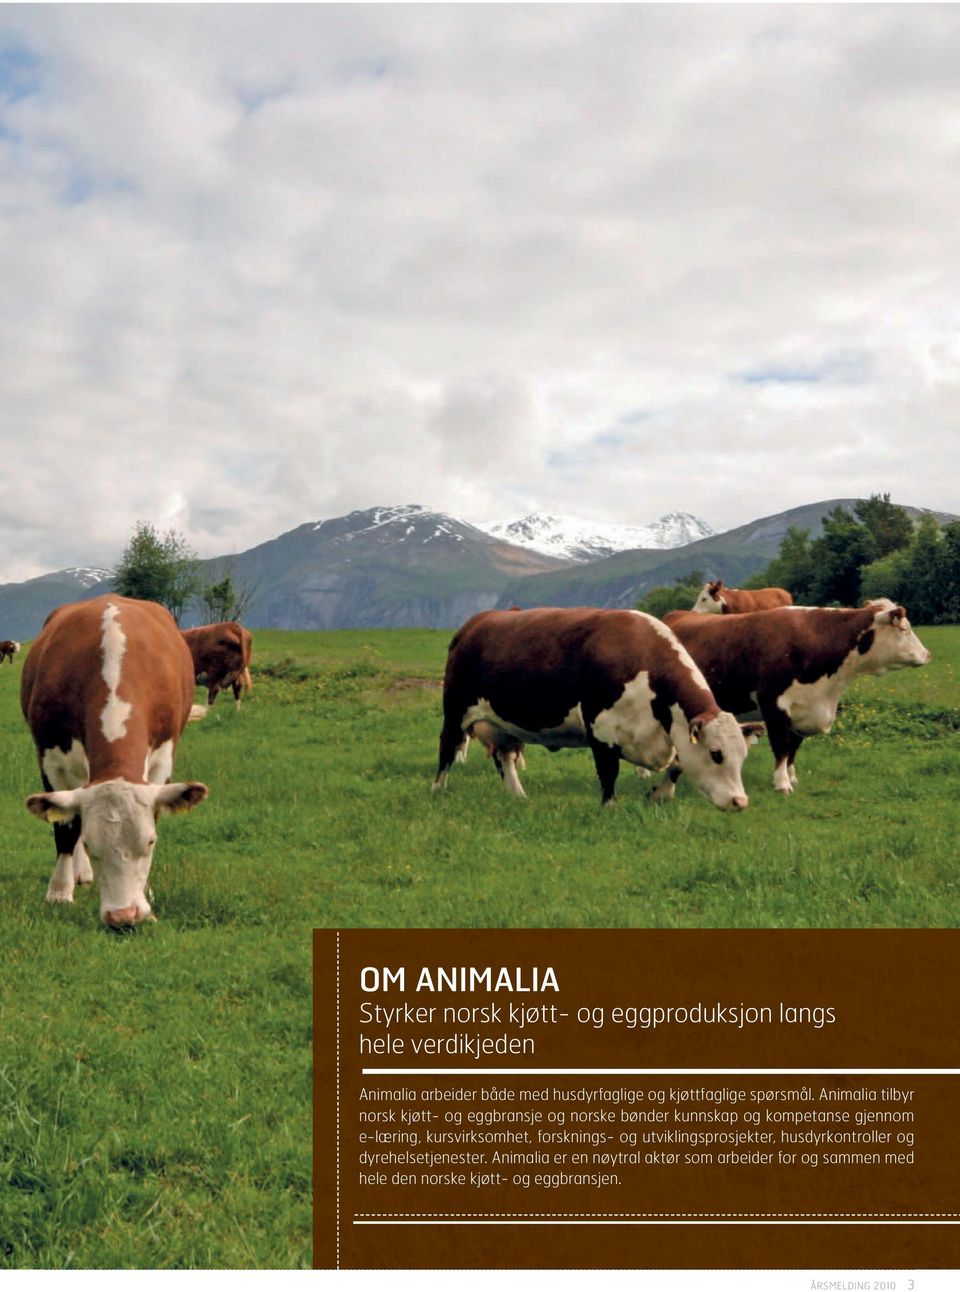 Animalia tilbyr norsk kjøtt- og eggbransje og norske bønder kunnskap og kompetanse gjennom e-læring,